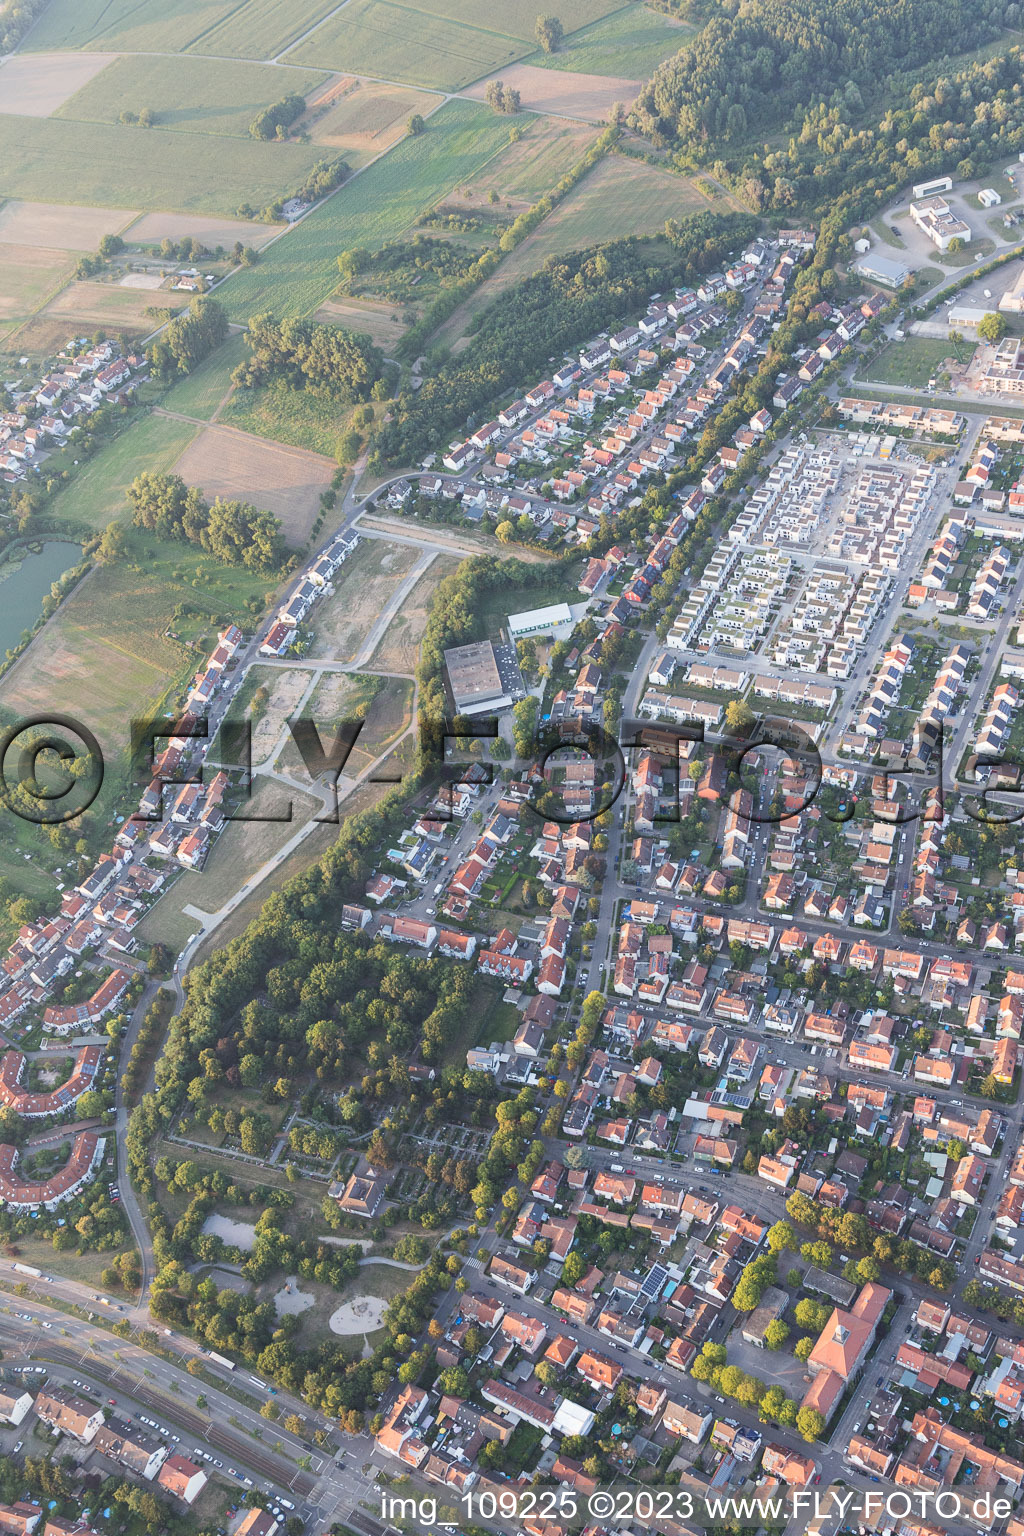 Ortsteil Knielingen in Karlsruhe im Bundesland Baden-Württemberg, Deutschland von der Drohne aus gesehen